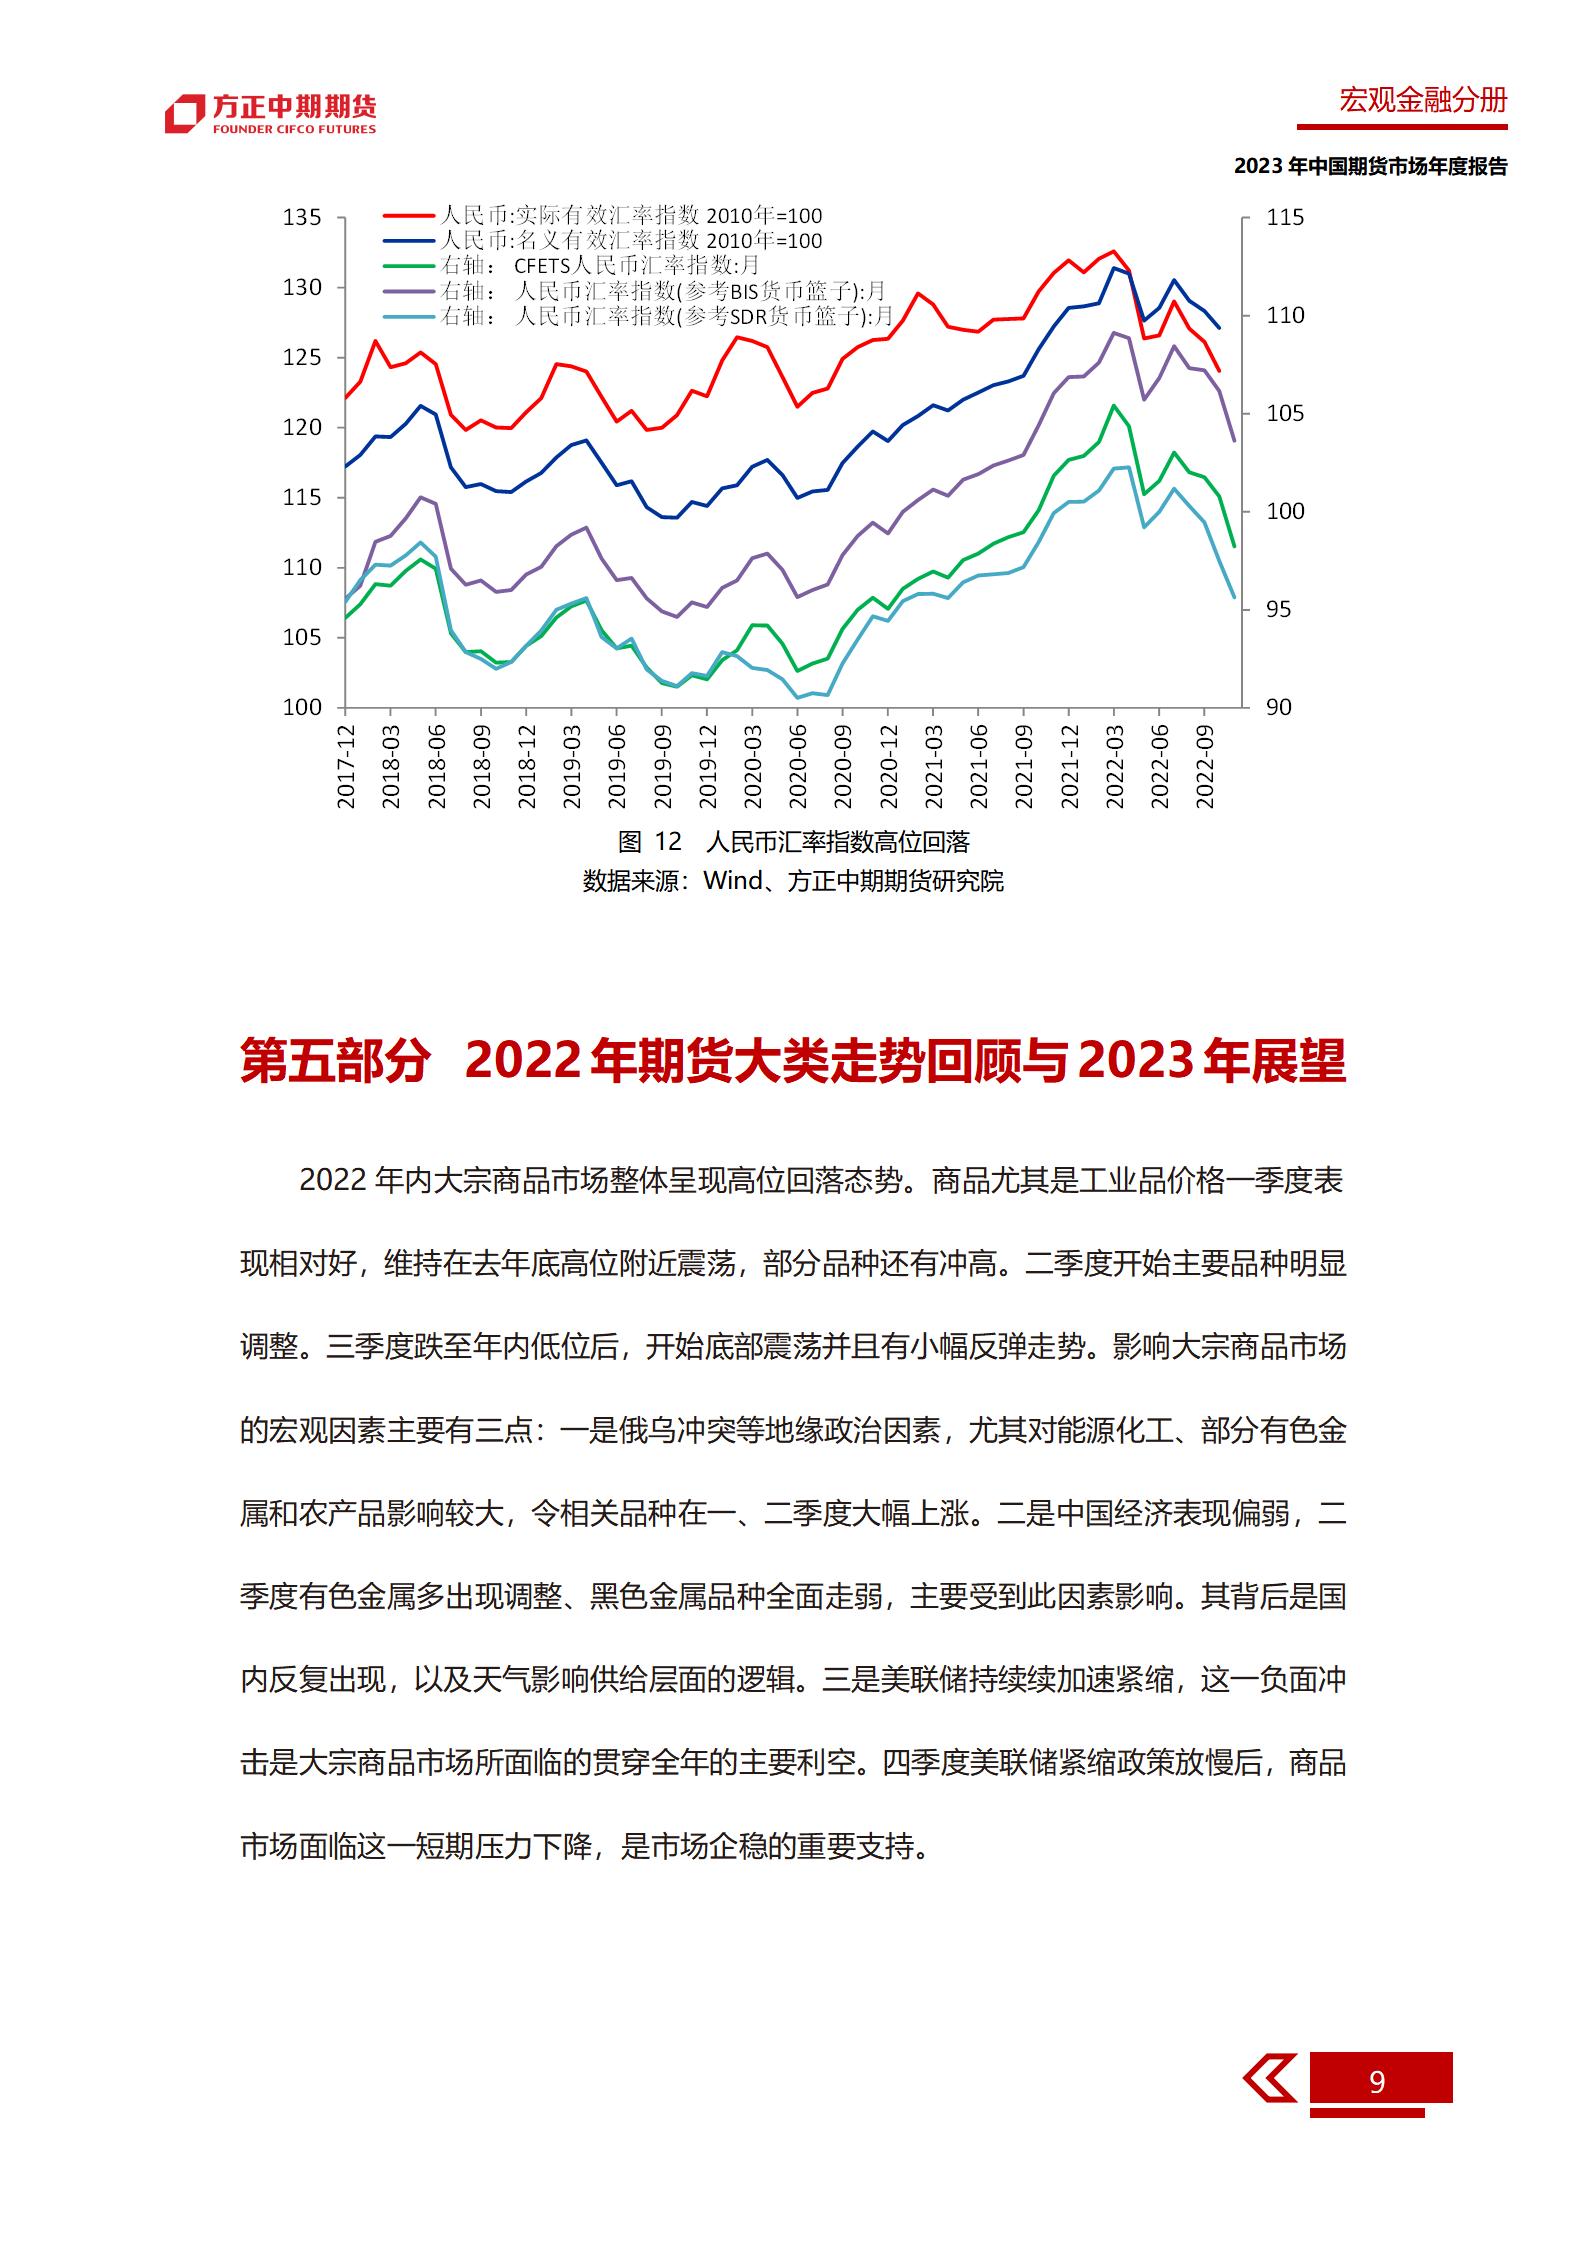 无惧逆风 砥砺前行——2022年中国经济回忆与2023年展望